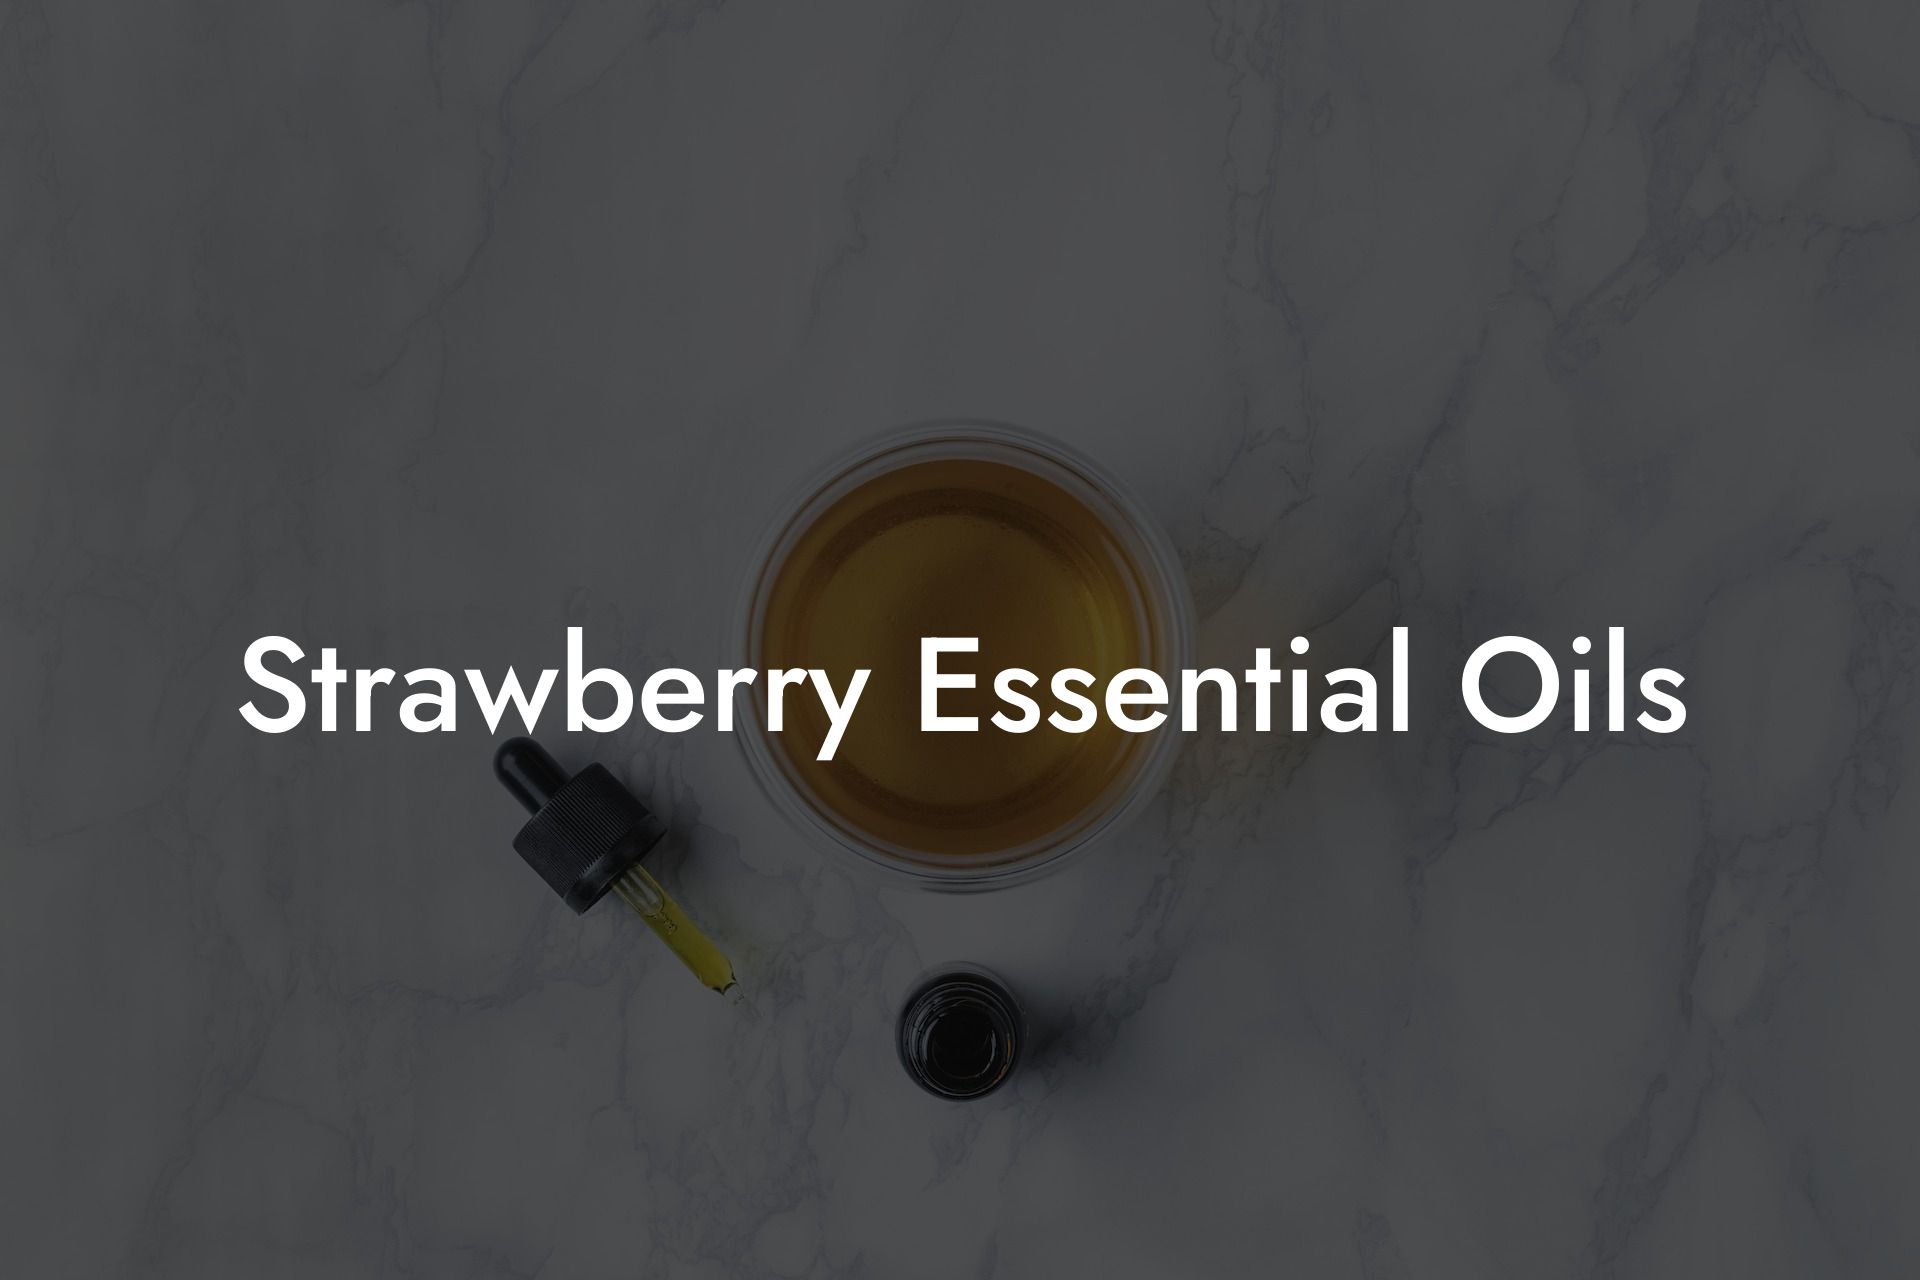 Strawberry Essential Oils